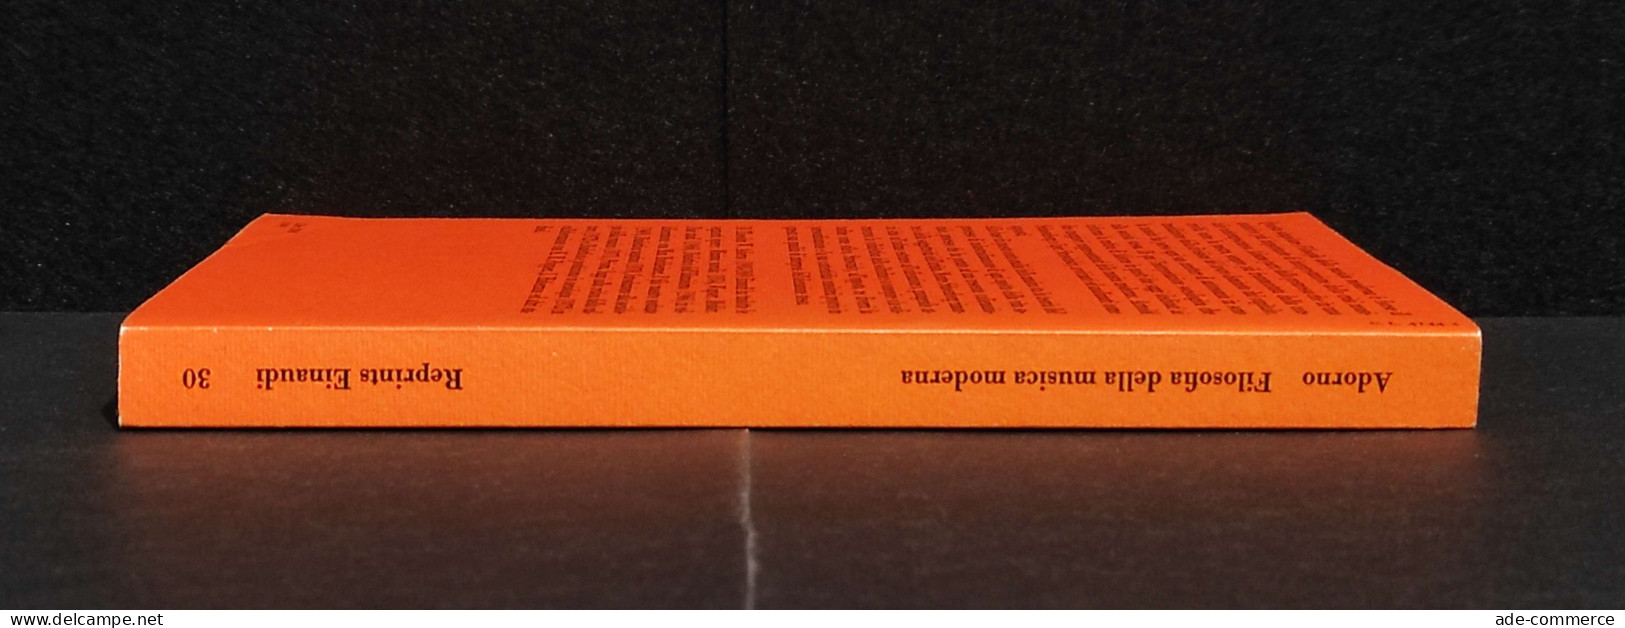 Filosofia Della Musica Moderna - T. W. Adorno - Ed. Reprints Einaudi - 1975 - Cinema E Musica